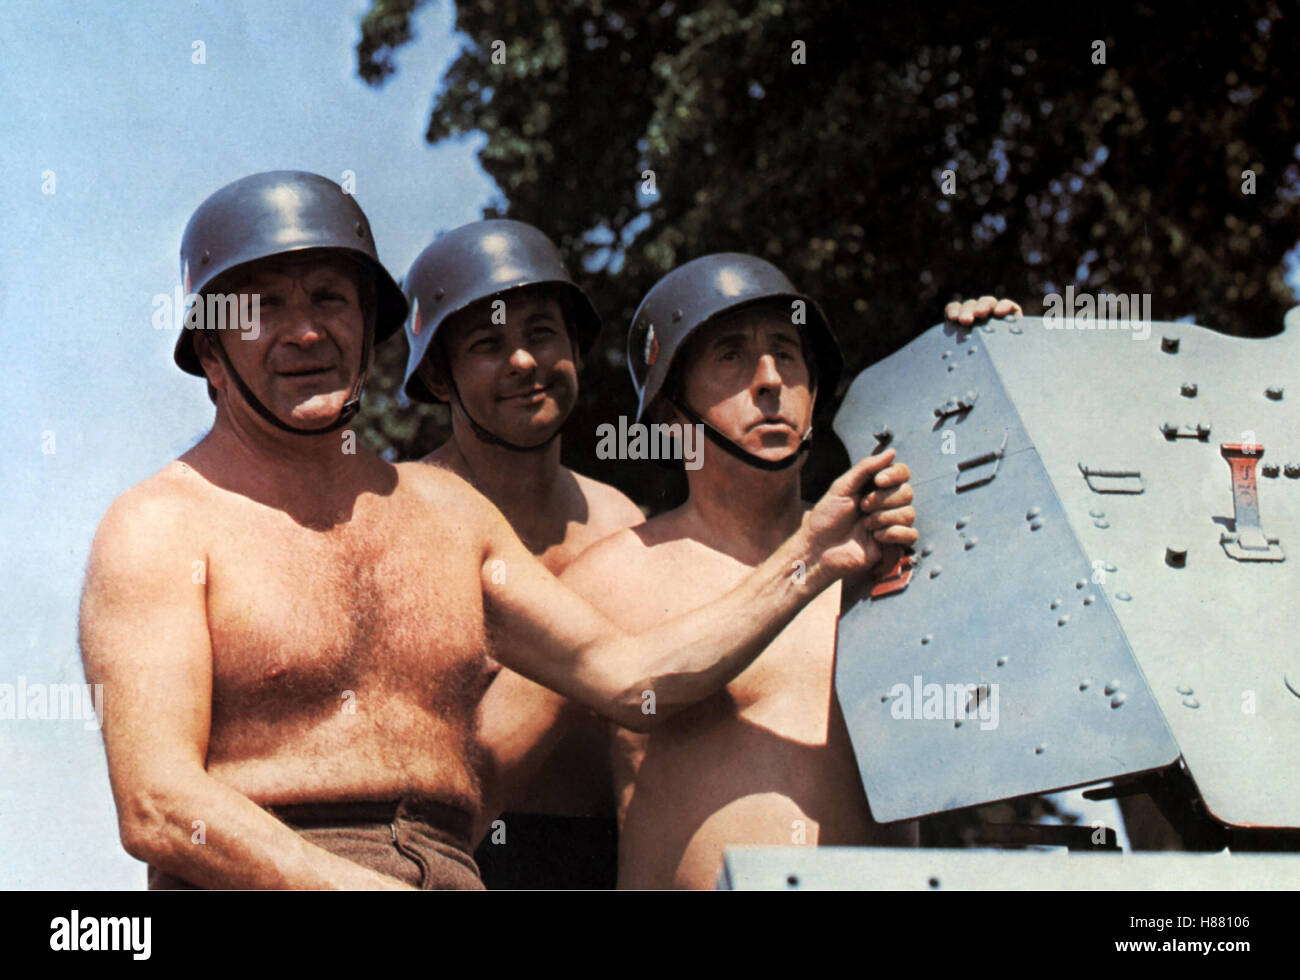 Hurra, die 7. Kompanie ist wieder da!, (ON A RETROUVE LA 7e COMPAGNIE!) F 1975, Regie: Robert Lamoureux, PIERRE MONDI, HENRI GUYBET + JEAN LEFEBVRE, Stichwort: Soldatenhelm Stock Photo